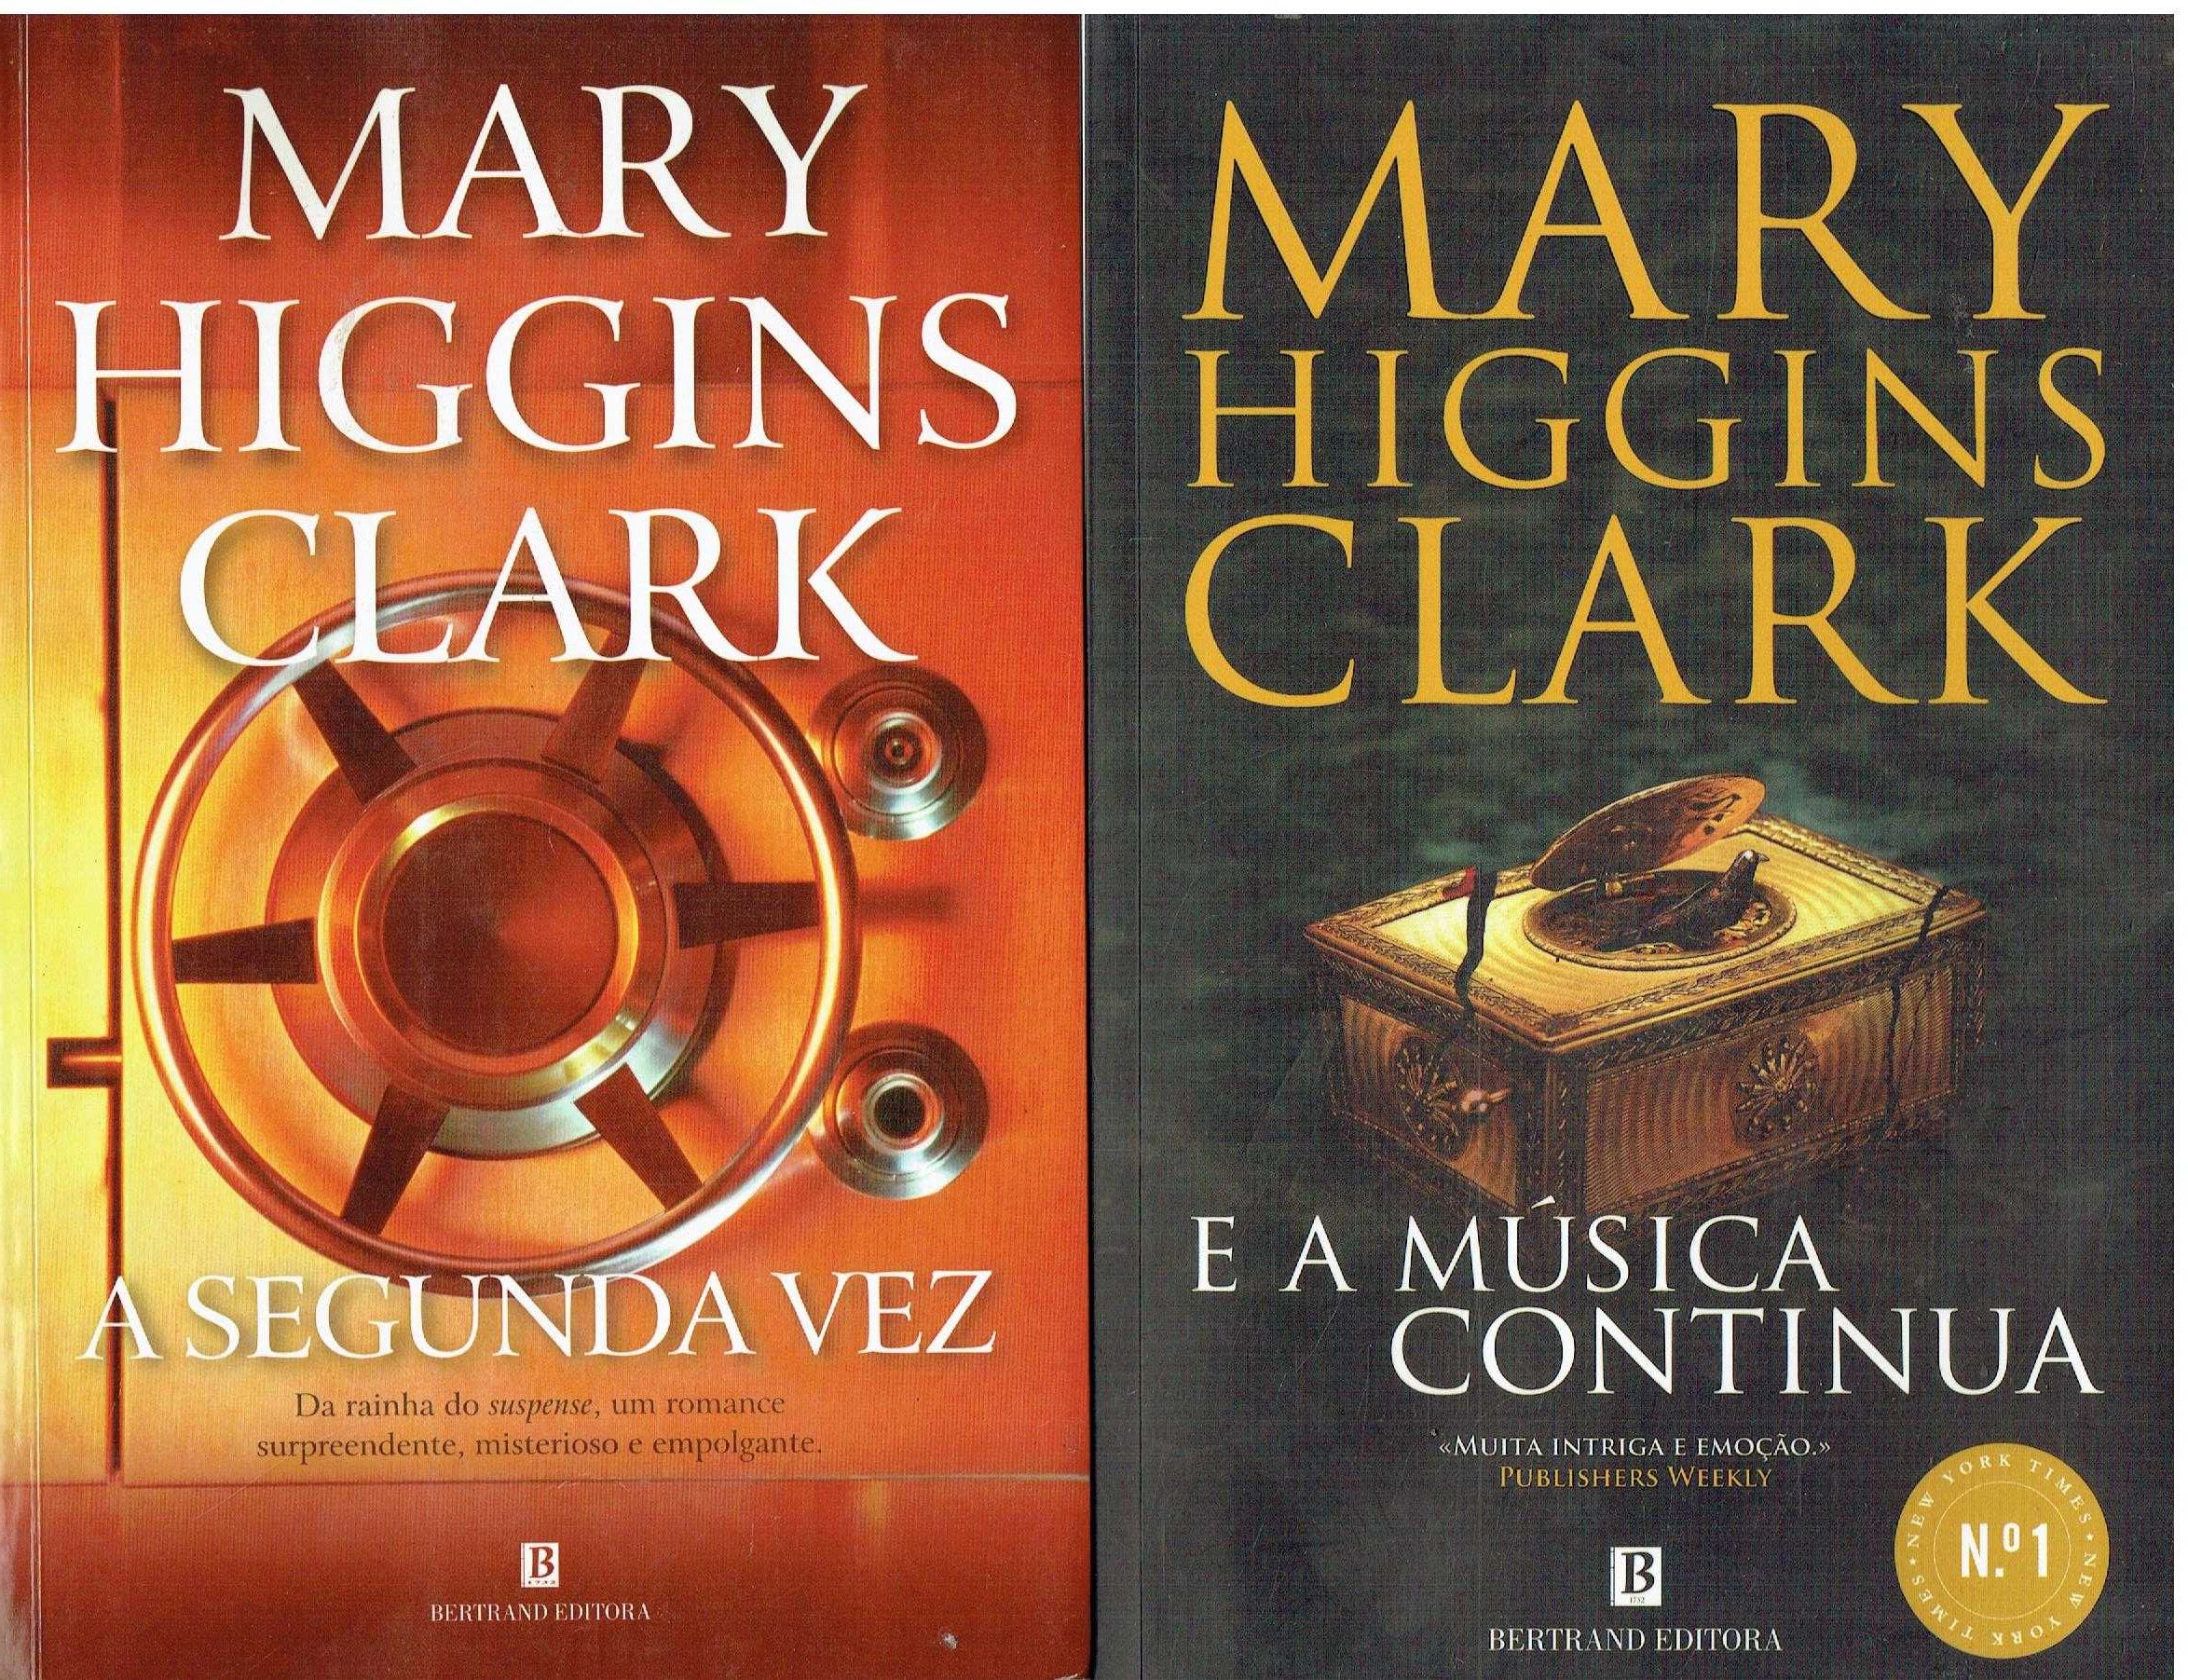 13039

Livros de Mary Higgins Clark